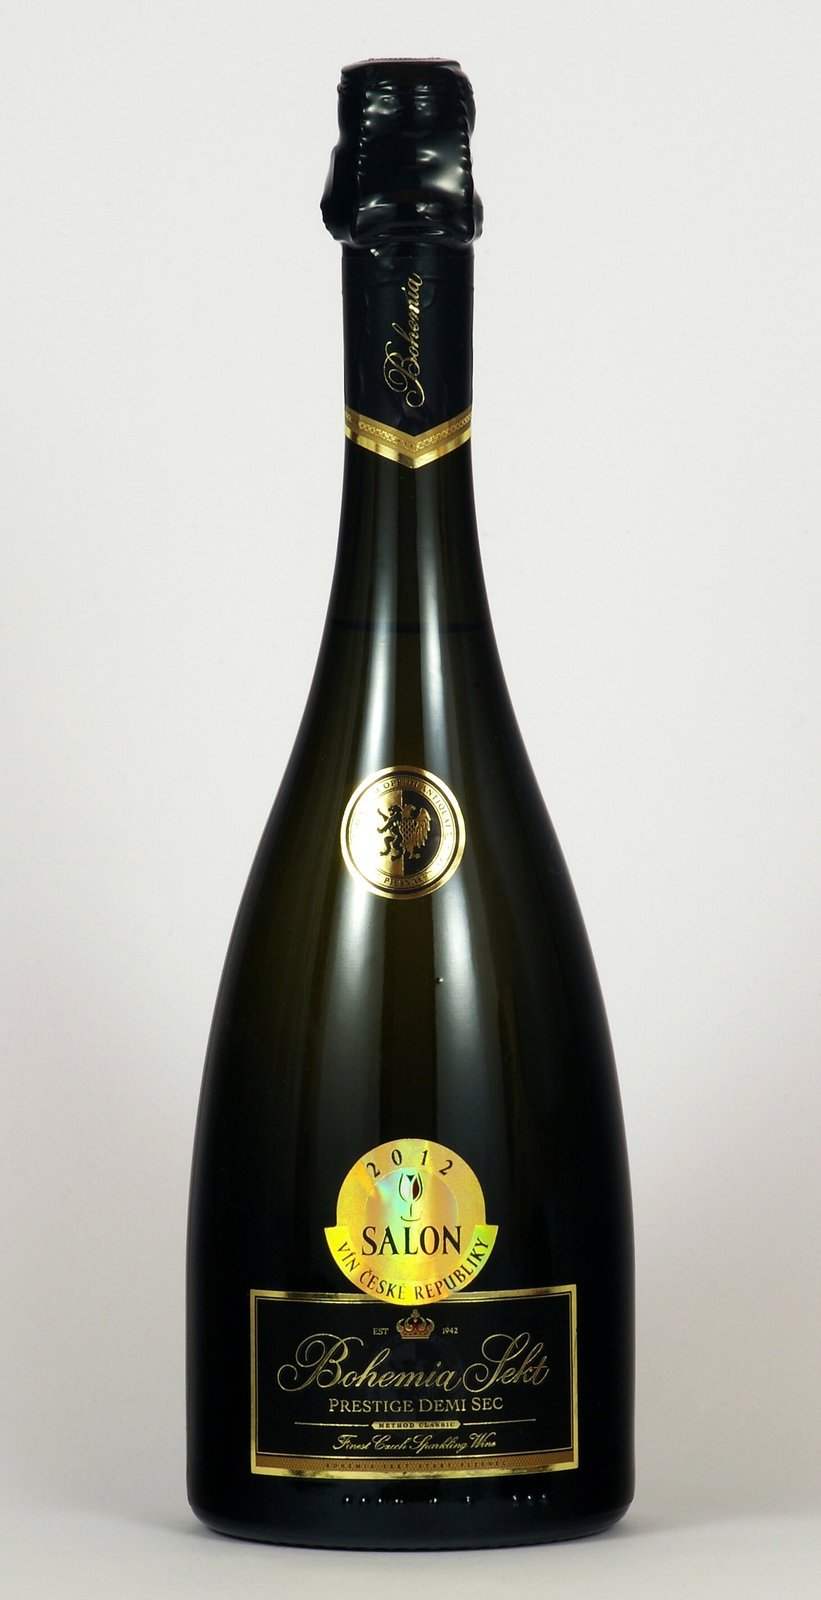 Jako nejlepší z jakostních šumivých vín vybrala porota Bohemia Sekt Prestige demi sec 2009 od společnosti Bohemia Sekt